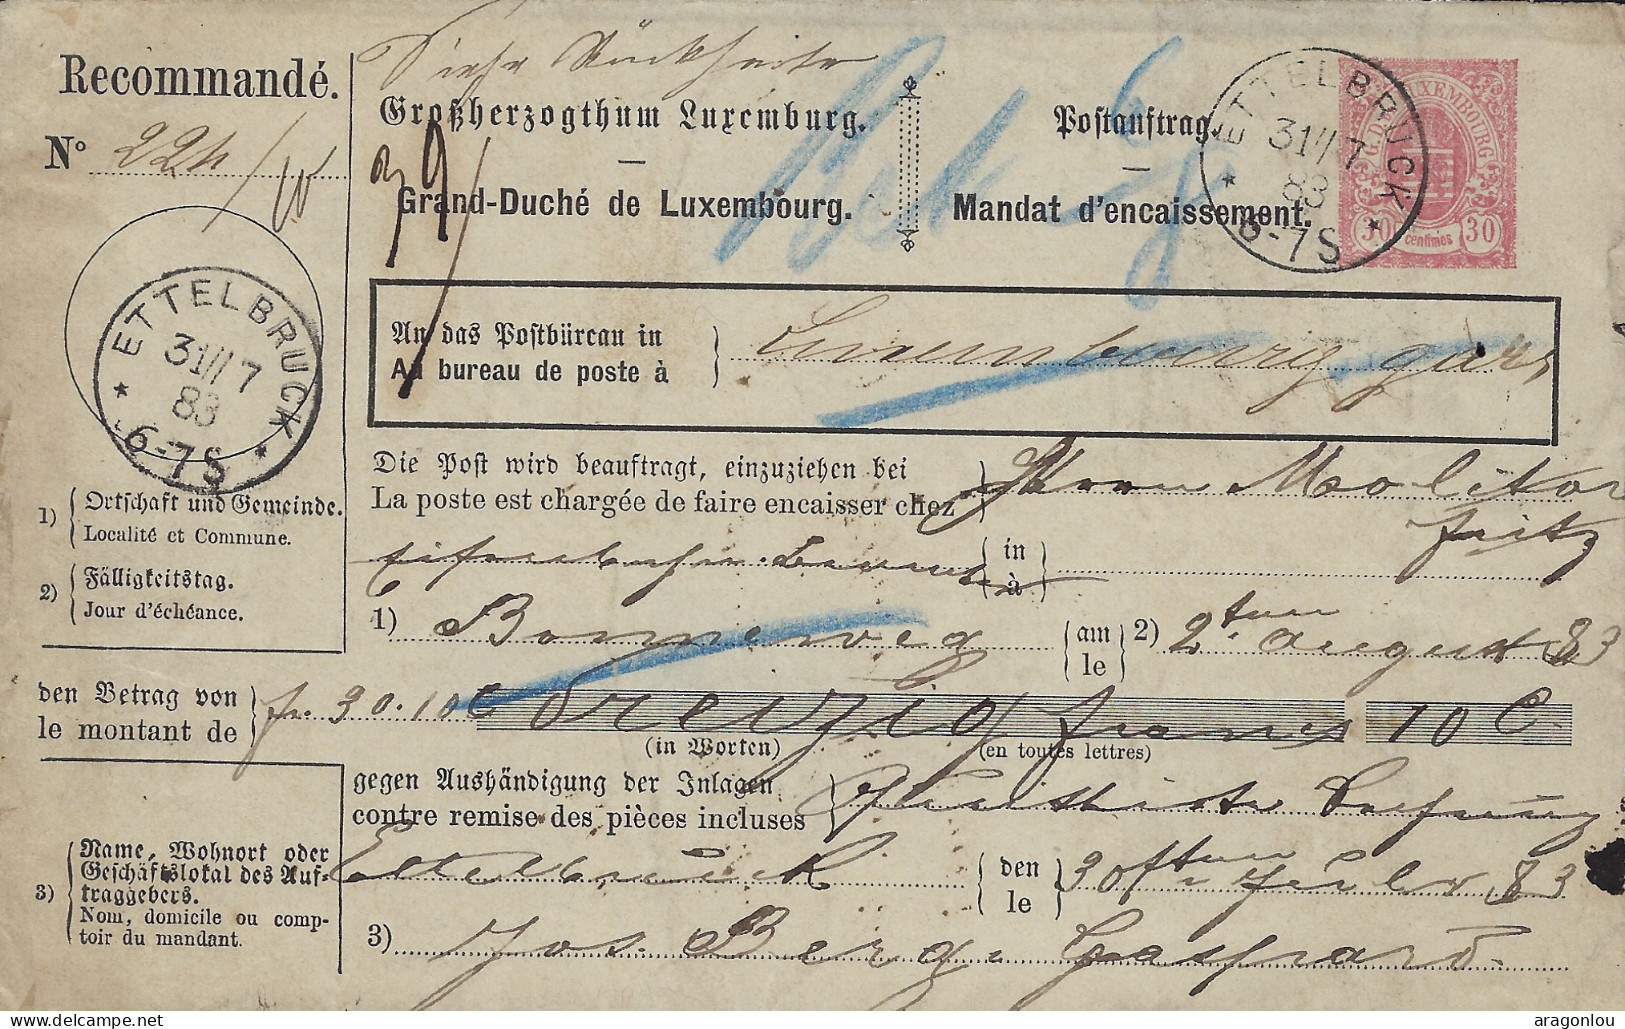 Luxembourg - Luxemburg  -   Eug.Mailliet , Schlindermanderscheid  -  Quittung Durch Postnachnahme  1911 ( Pli Droite ) - Luxembourg